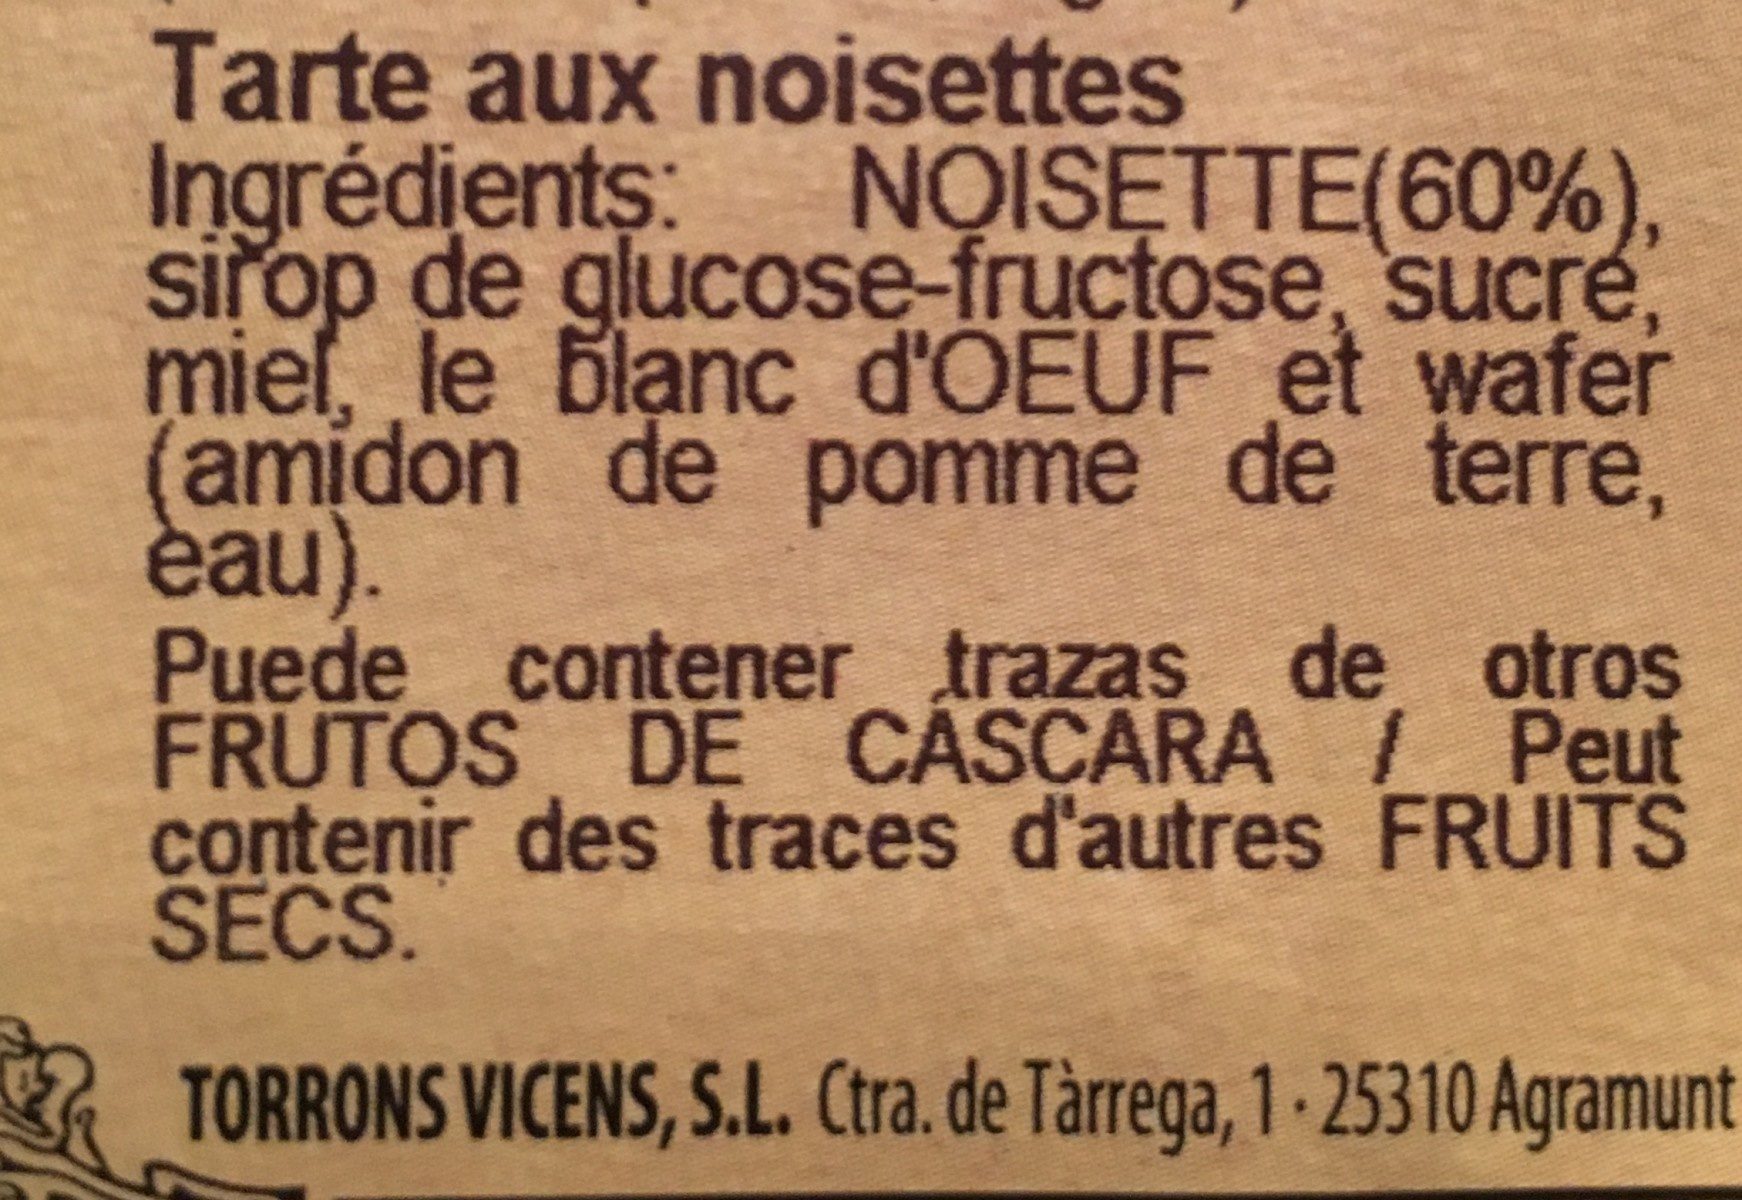 Túrron aux noisettes - Ingredients - fr